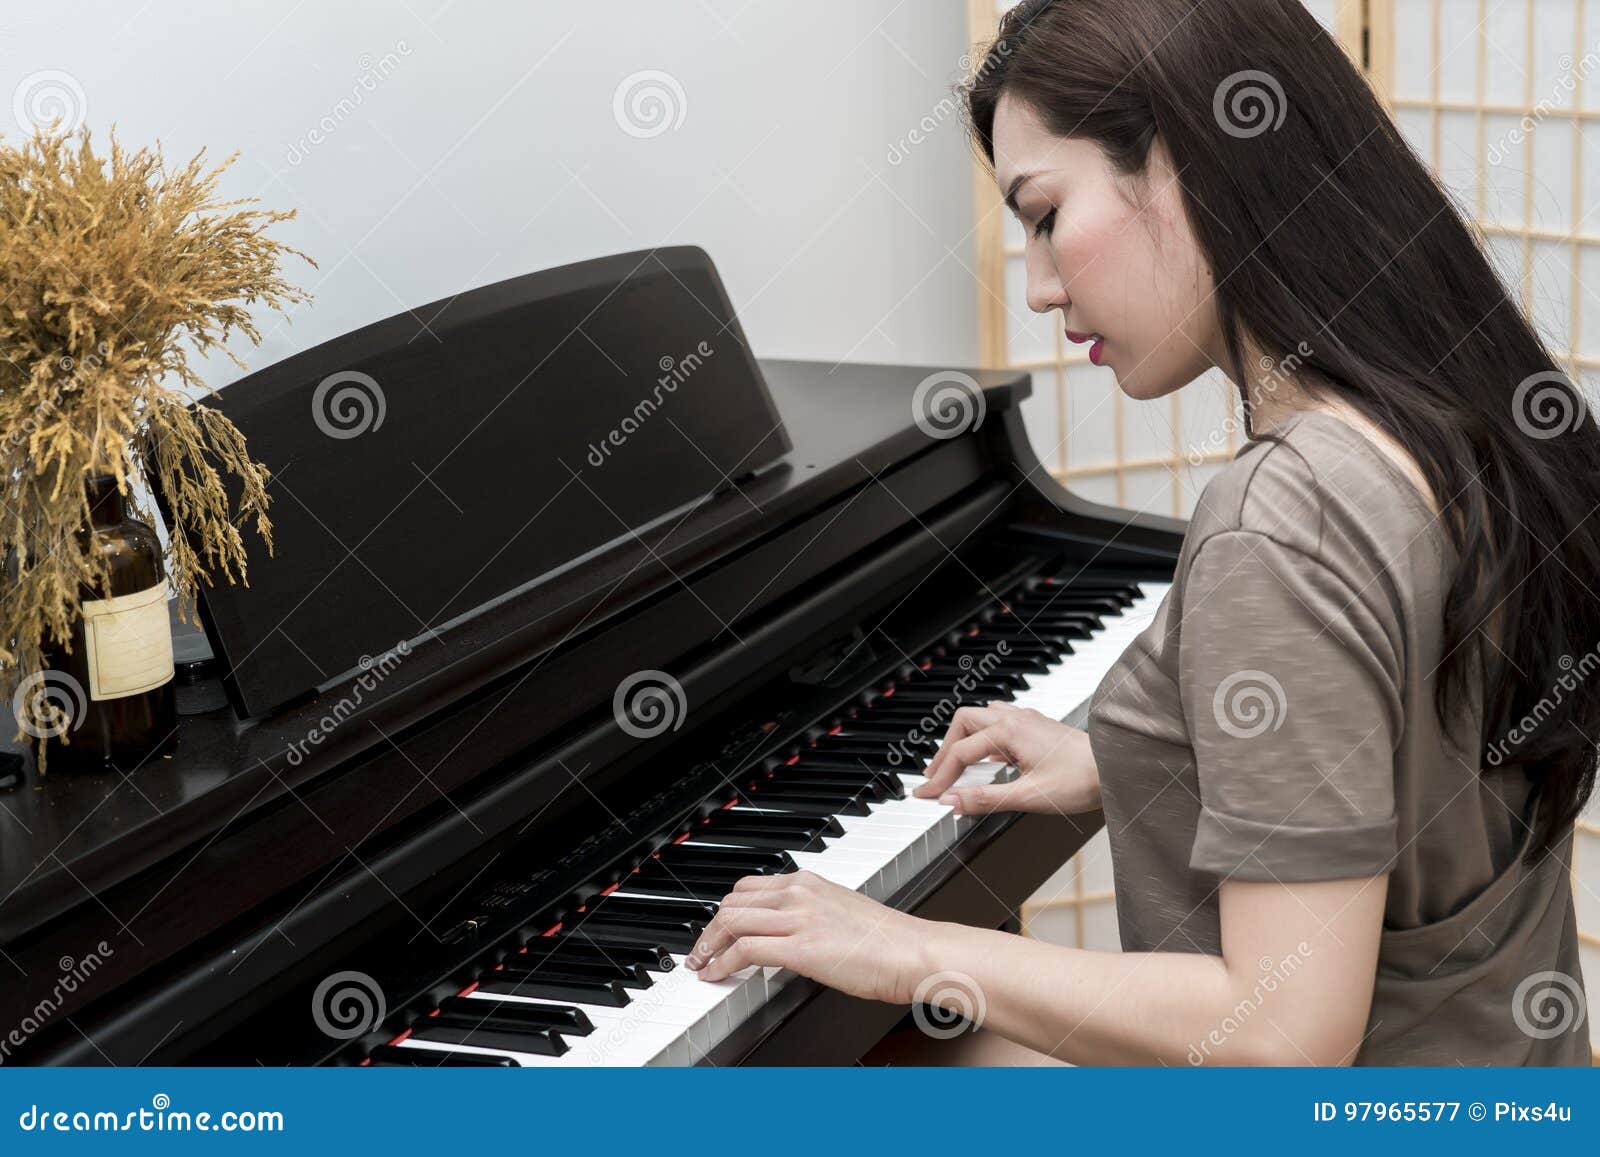 Look she plays the piano. Девушка играет на фортепиано. Женщина музыкант пианино. Девушка играет на пианино. Женщина играет на рояле.